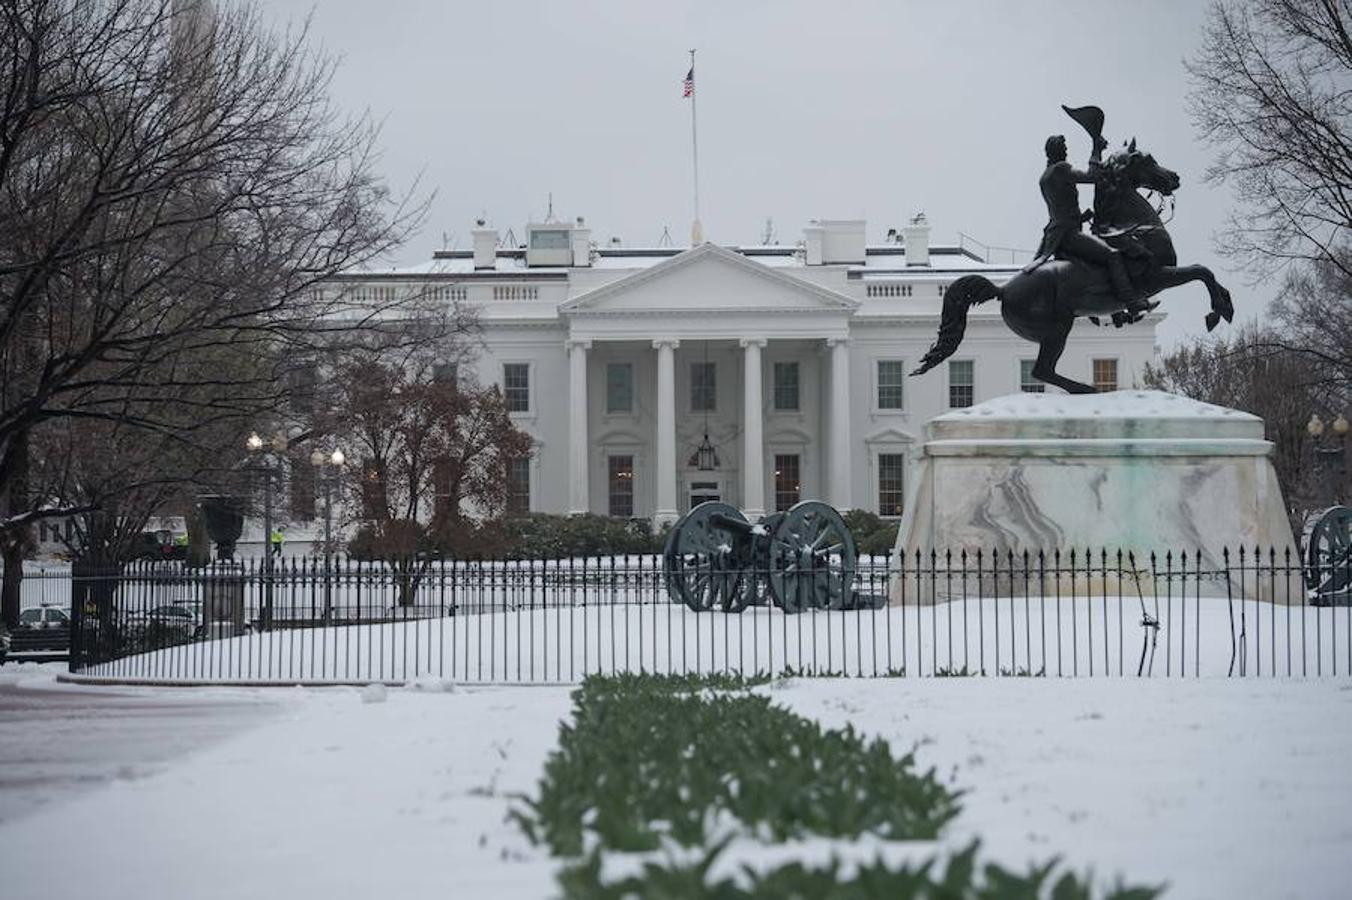 Vista de la Casa Blanca desde el Paque Lafayette